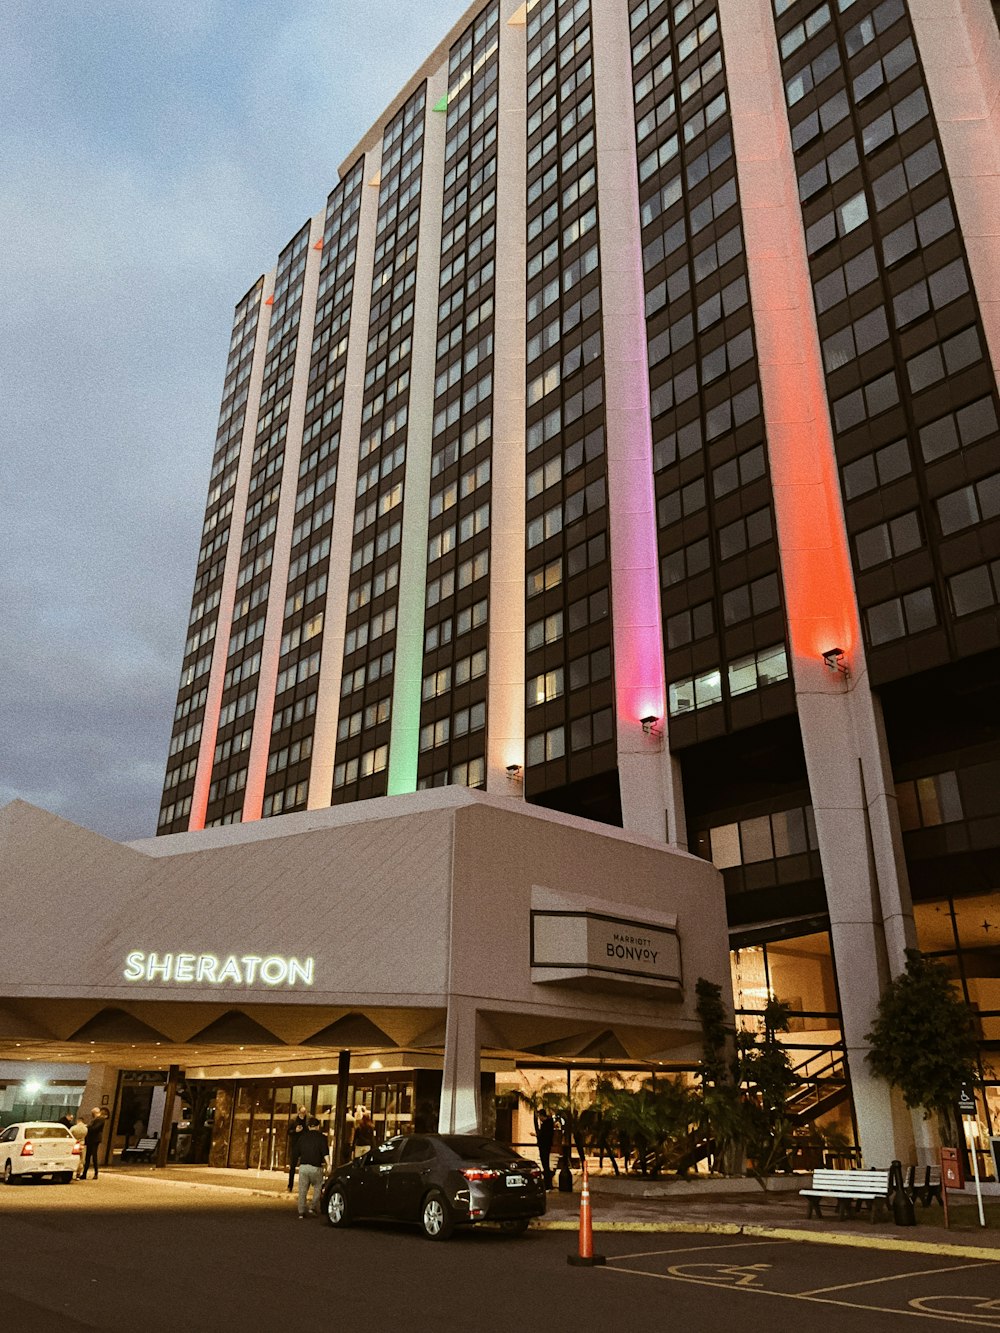 쉐라톤 호텔은 무지개 색으로 라이트 업됩니다.